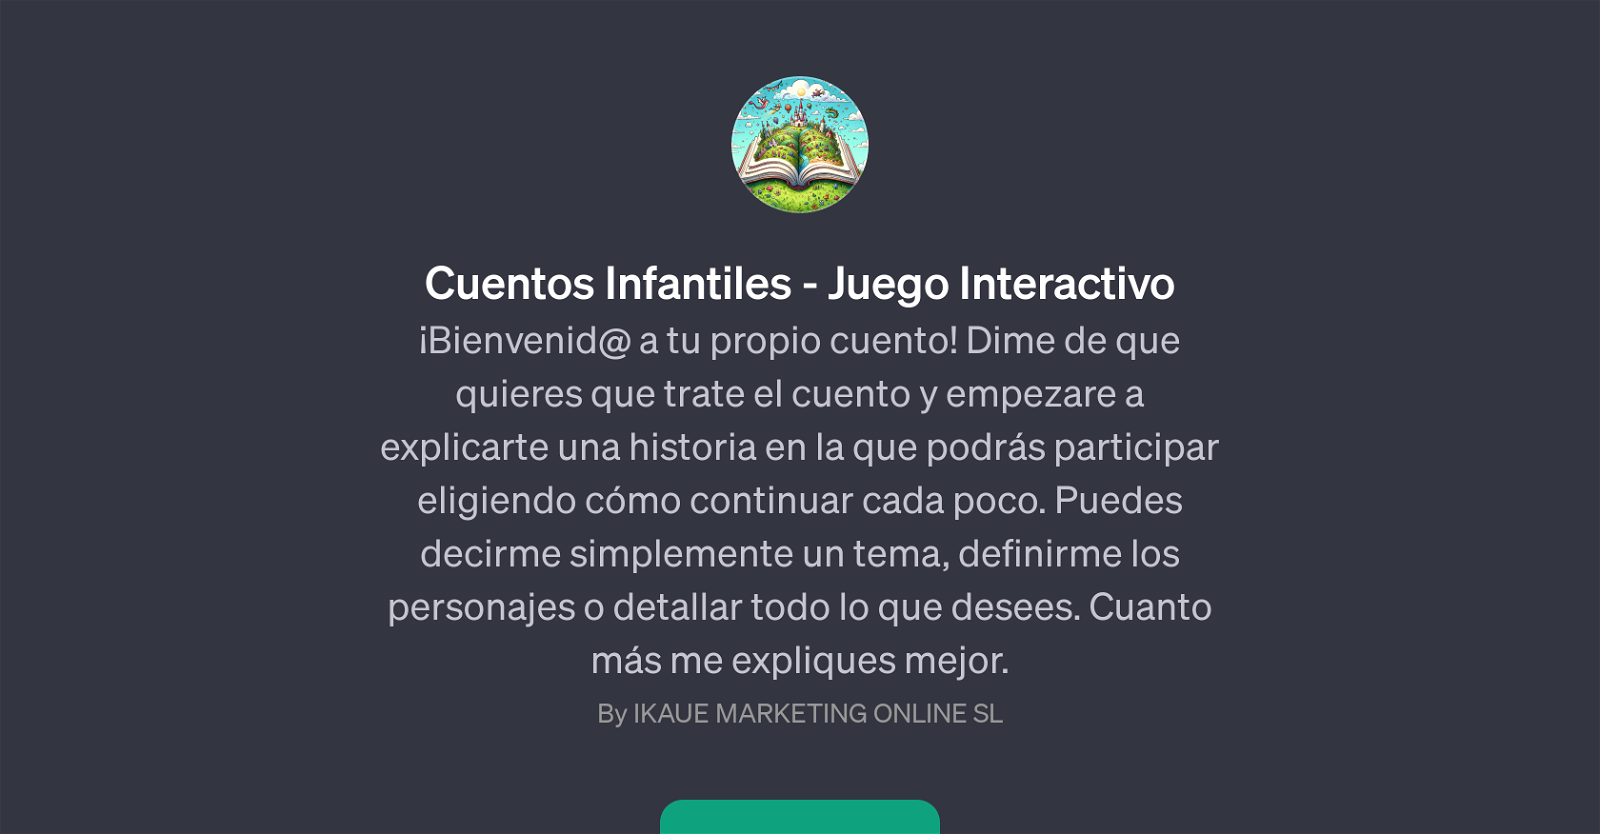 Cuentos Infantiles - Juego Interactivo website